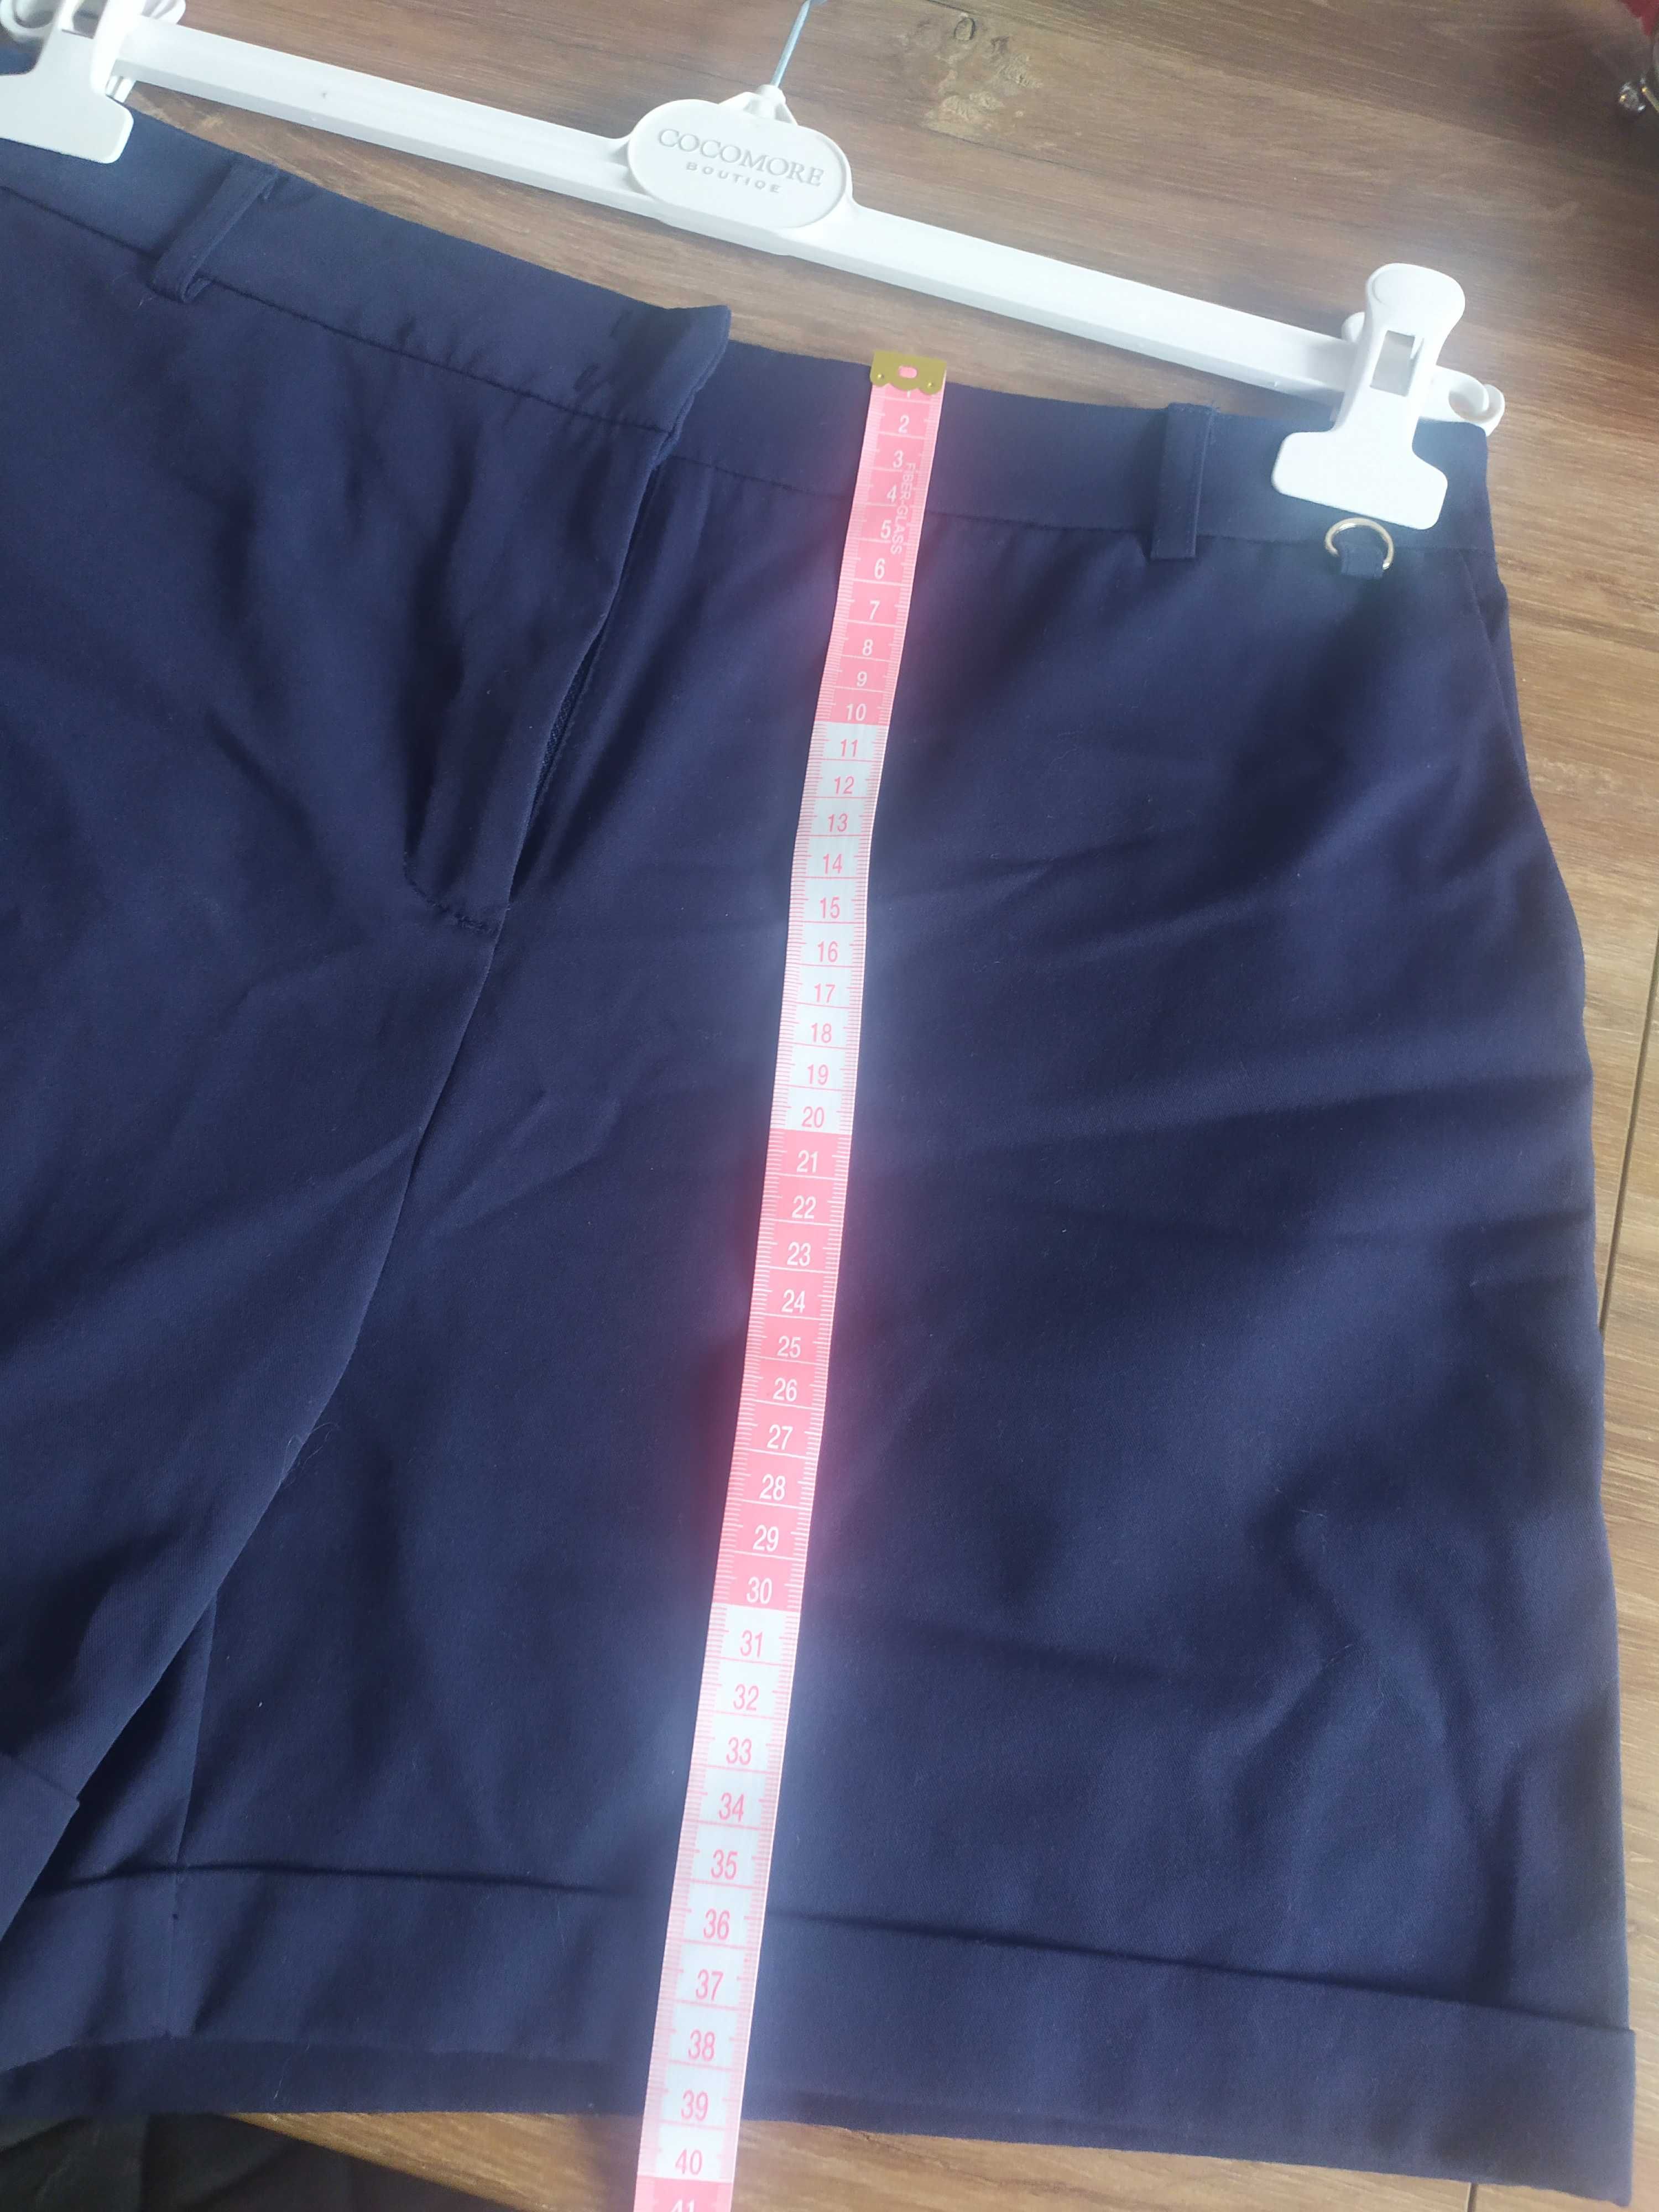 Granatowe spodenki TARANKO 38 M krótkie ciemne spodnie jak nowe